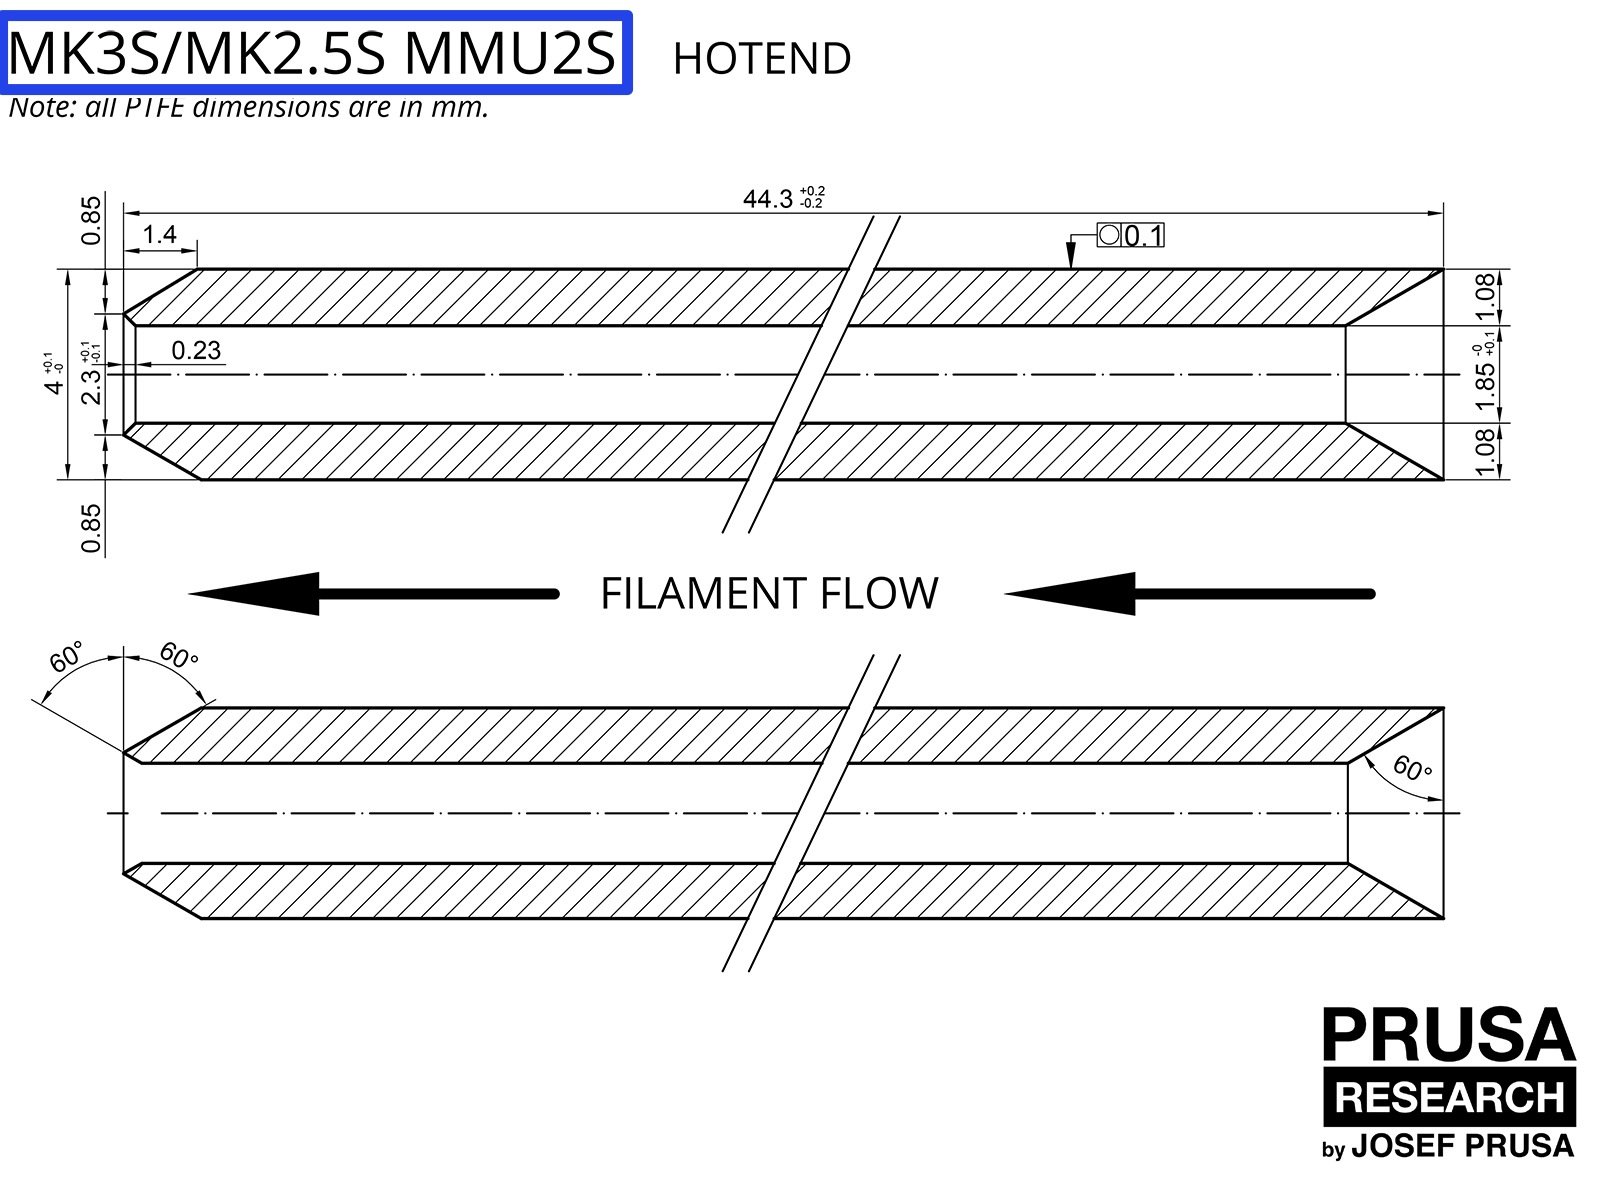 OBSOLÈTE : PTFE pour le MMU2S pour les MK3S/MK2.5S (partie 1)